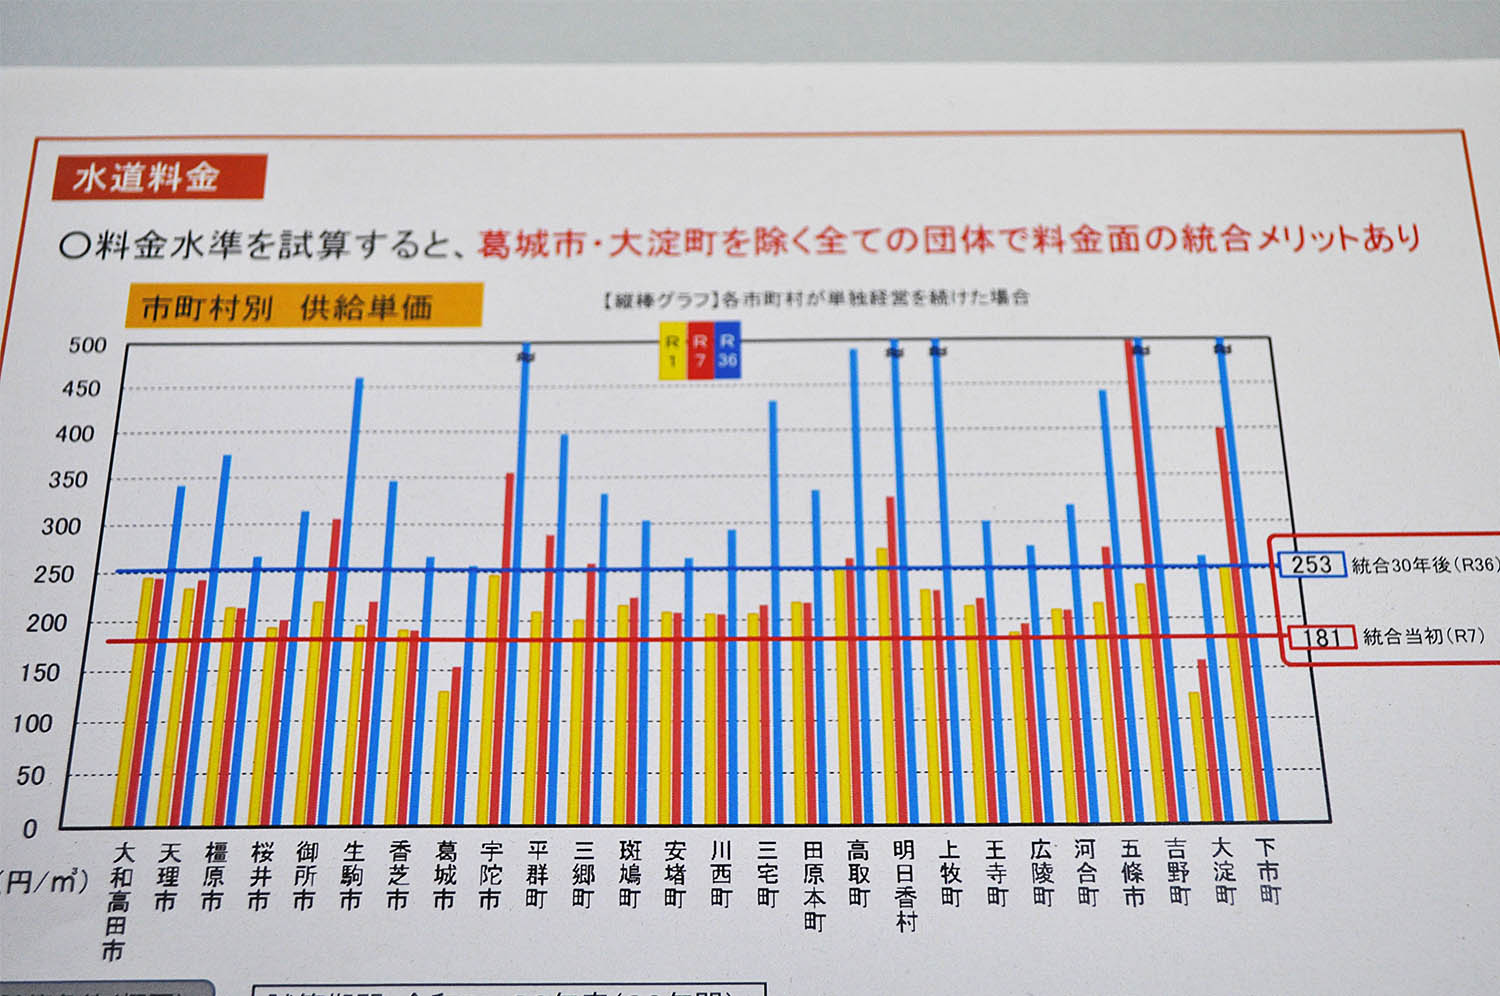 奈良県が示した水道料金試算のグラフ。棒グラフが市町村が単独経営を継続した場合、折れ線グラフが料金を統一した場合。単独経営を継続した場合に約30年後（青色の棒グラフ）の料金が著しく高くなることが予測される5市町村は目盛りが省略され、市町村間の損得を比較できない